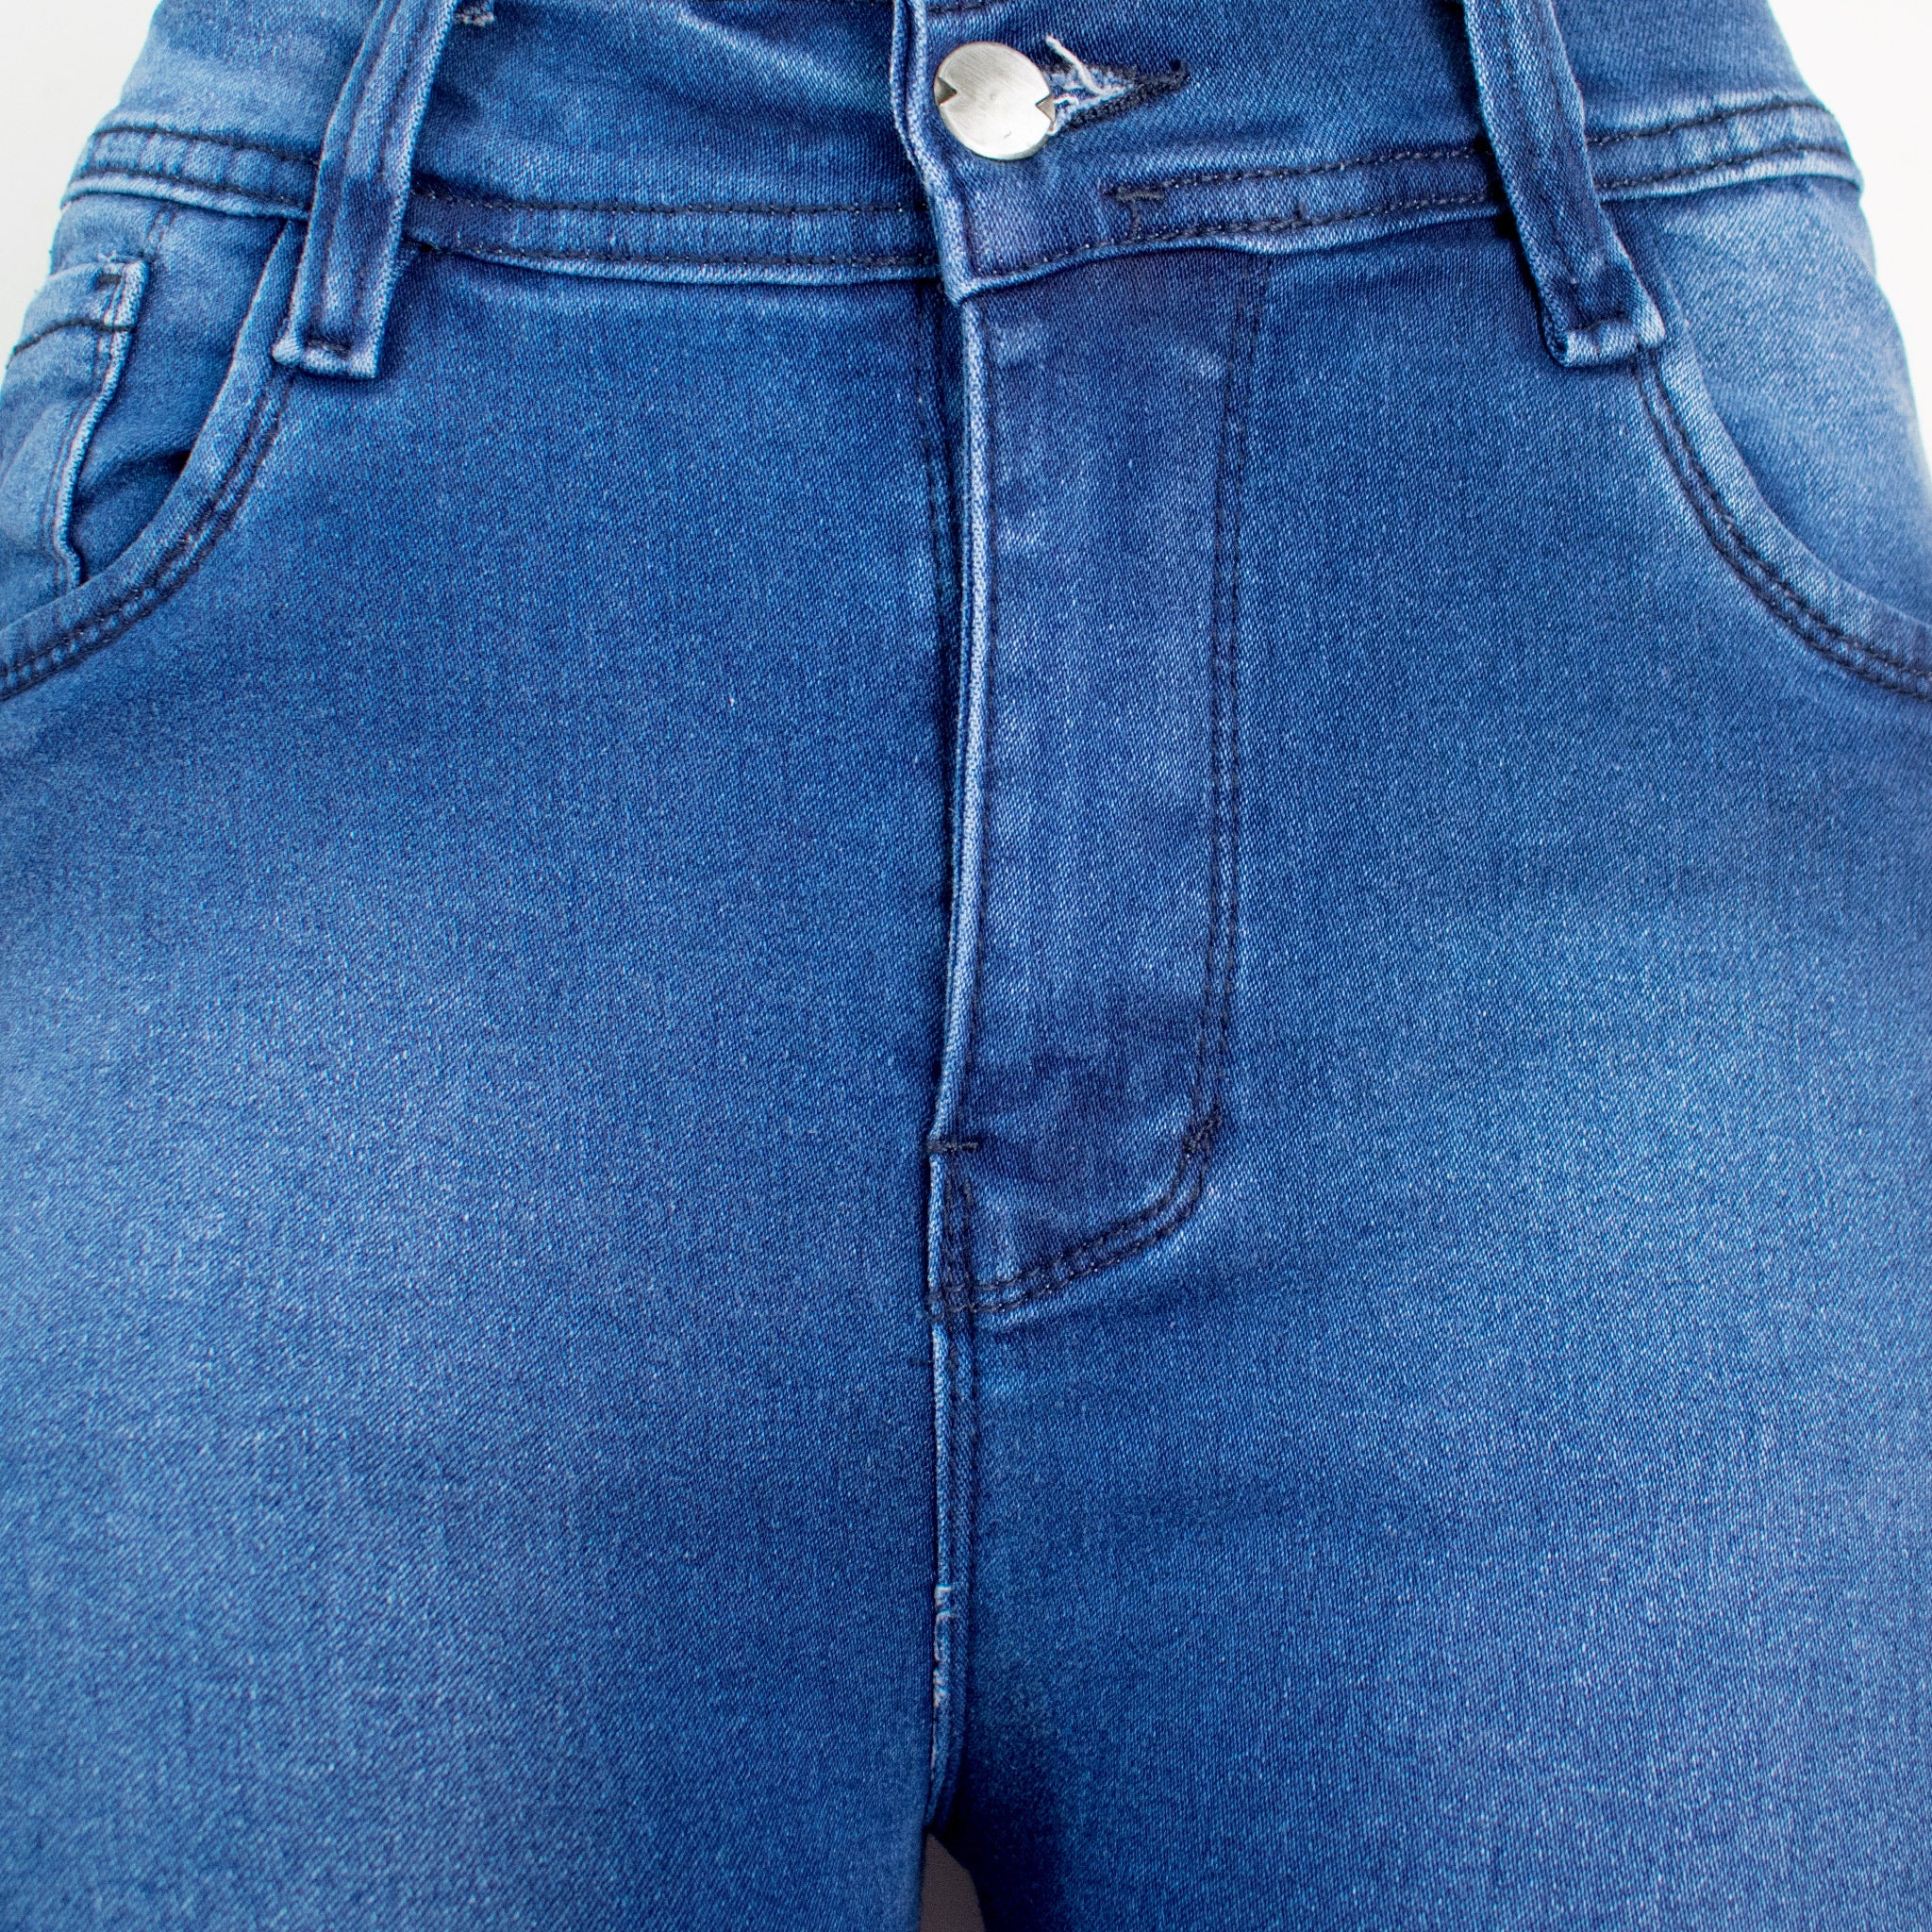 Jeans Clásicos Super Strech -Color: Azul Tradicional (NewClassic)